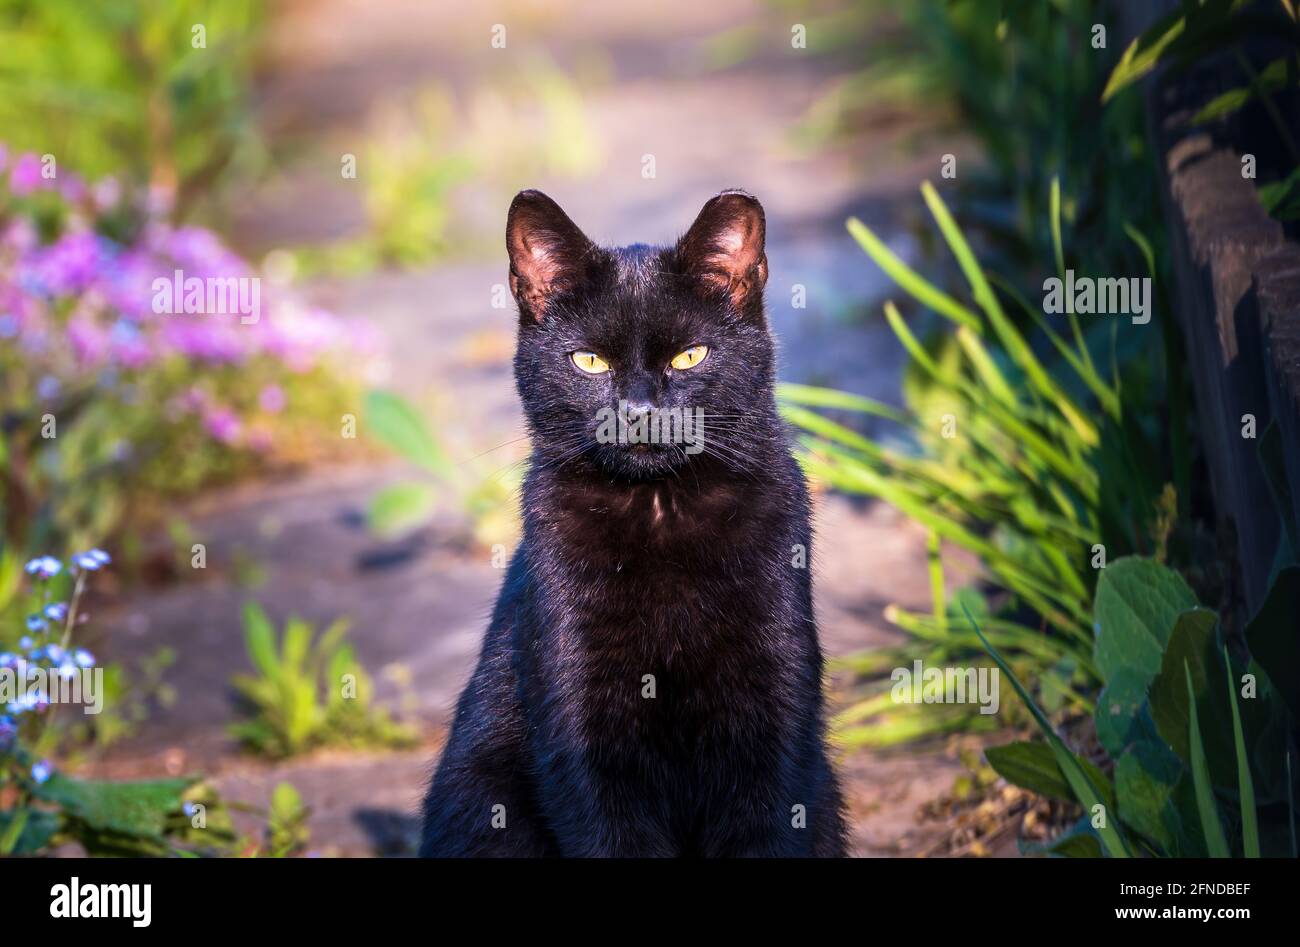 Ritratto di un gatto nero o gatto bombay guardando o fissando mentre si siede fermo. Felis silvestris, Felis catus Foto Stock